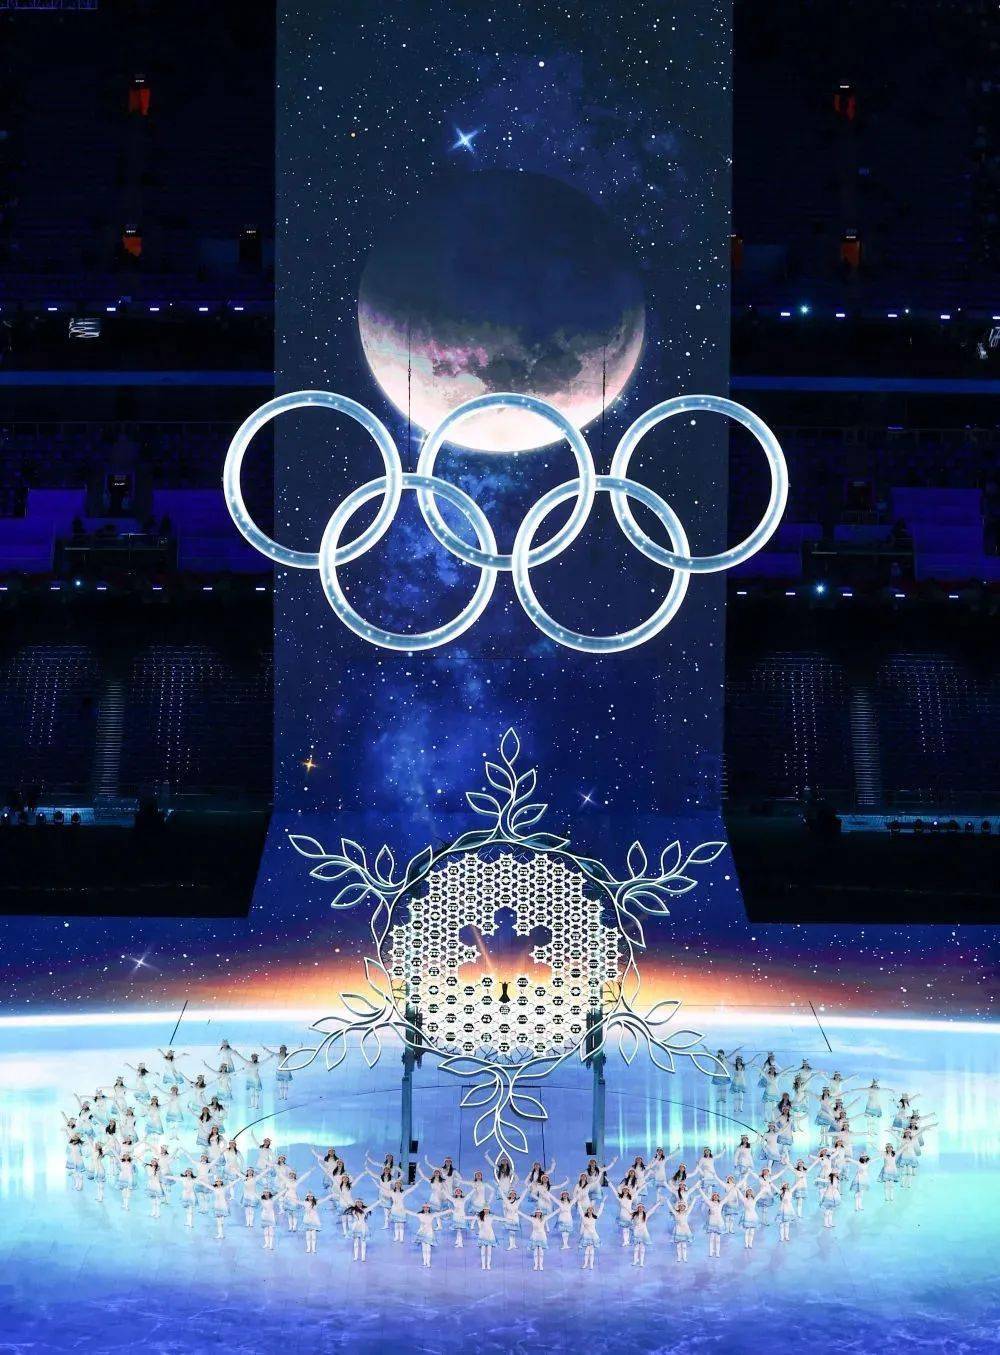 奥运五环 手机壁纸图片